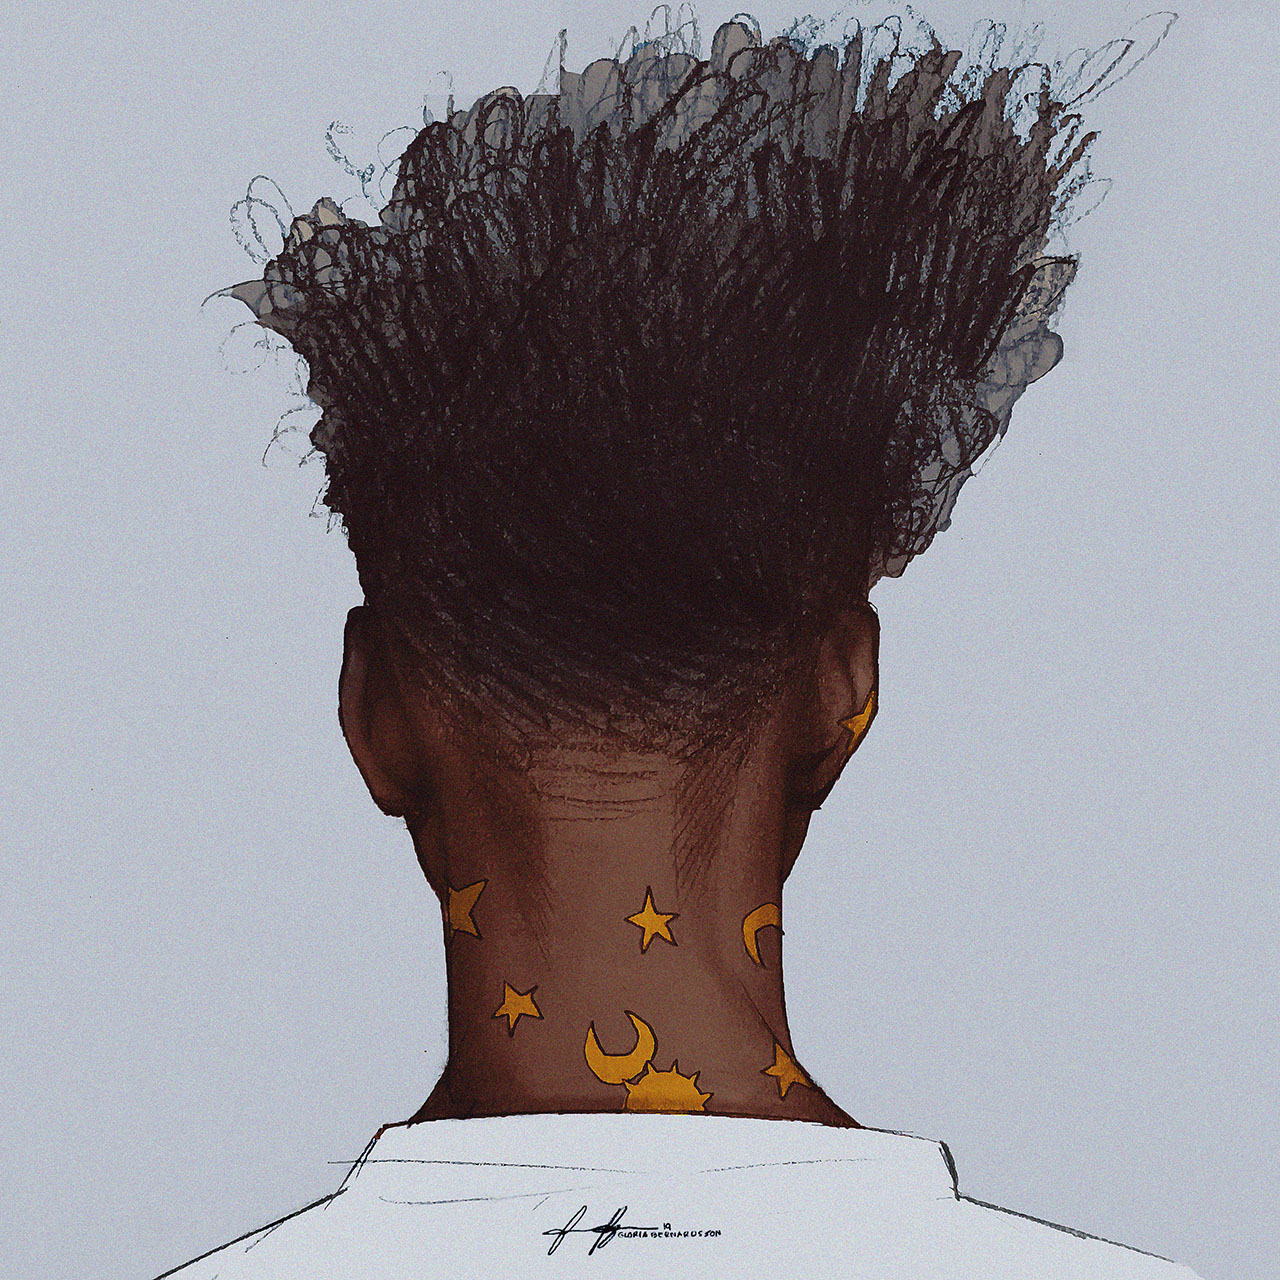 Boy with stickers on neck facing from camera Kille med afro och klistermärken på nacken